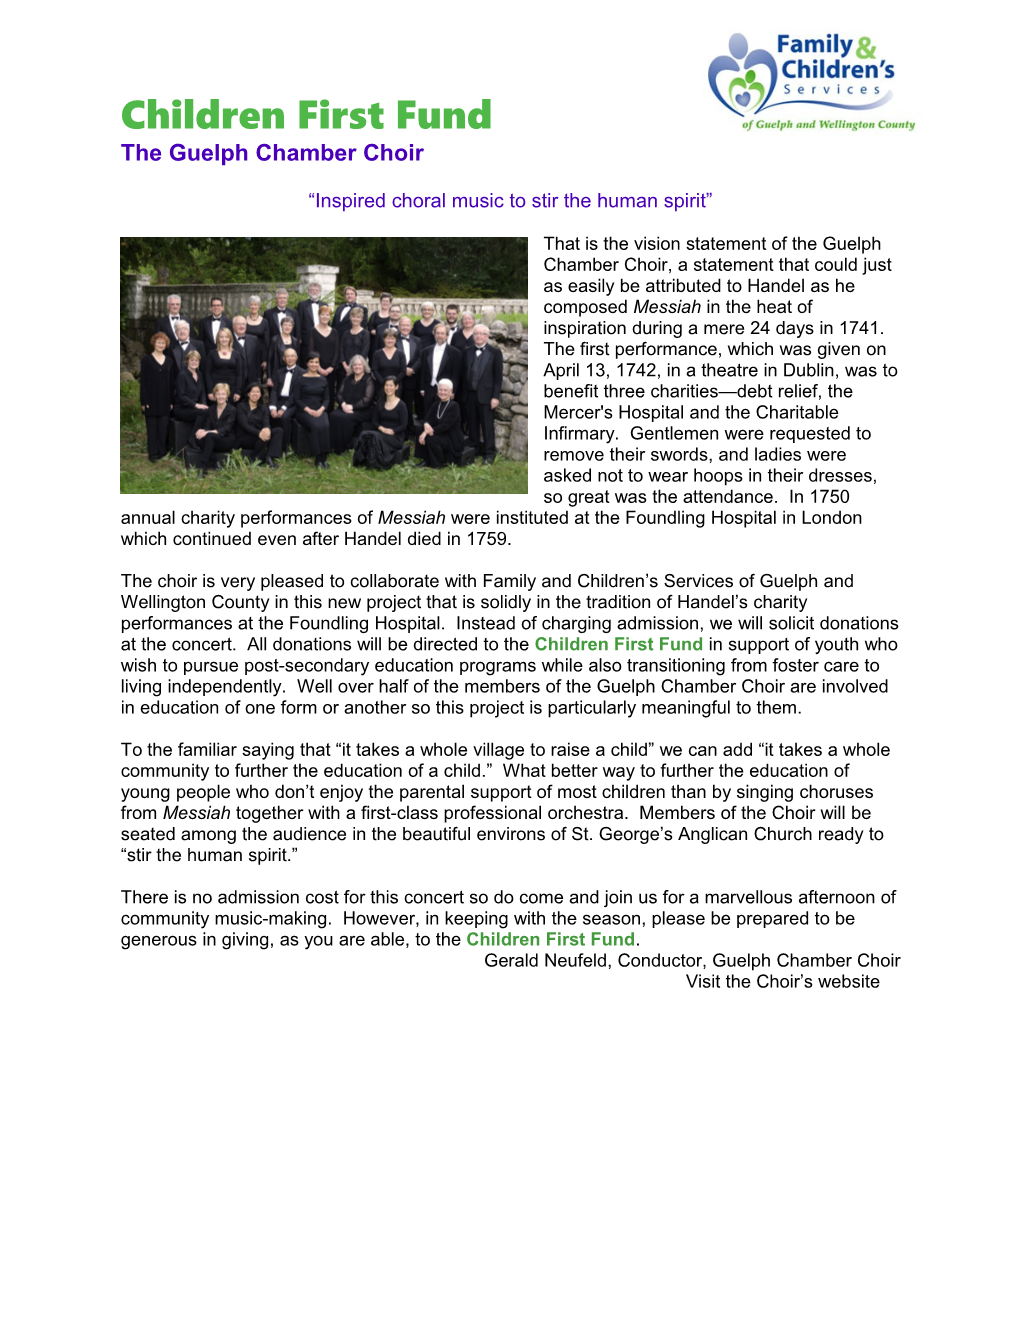 The Guelph Chamber Choir